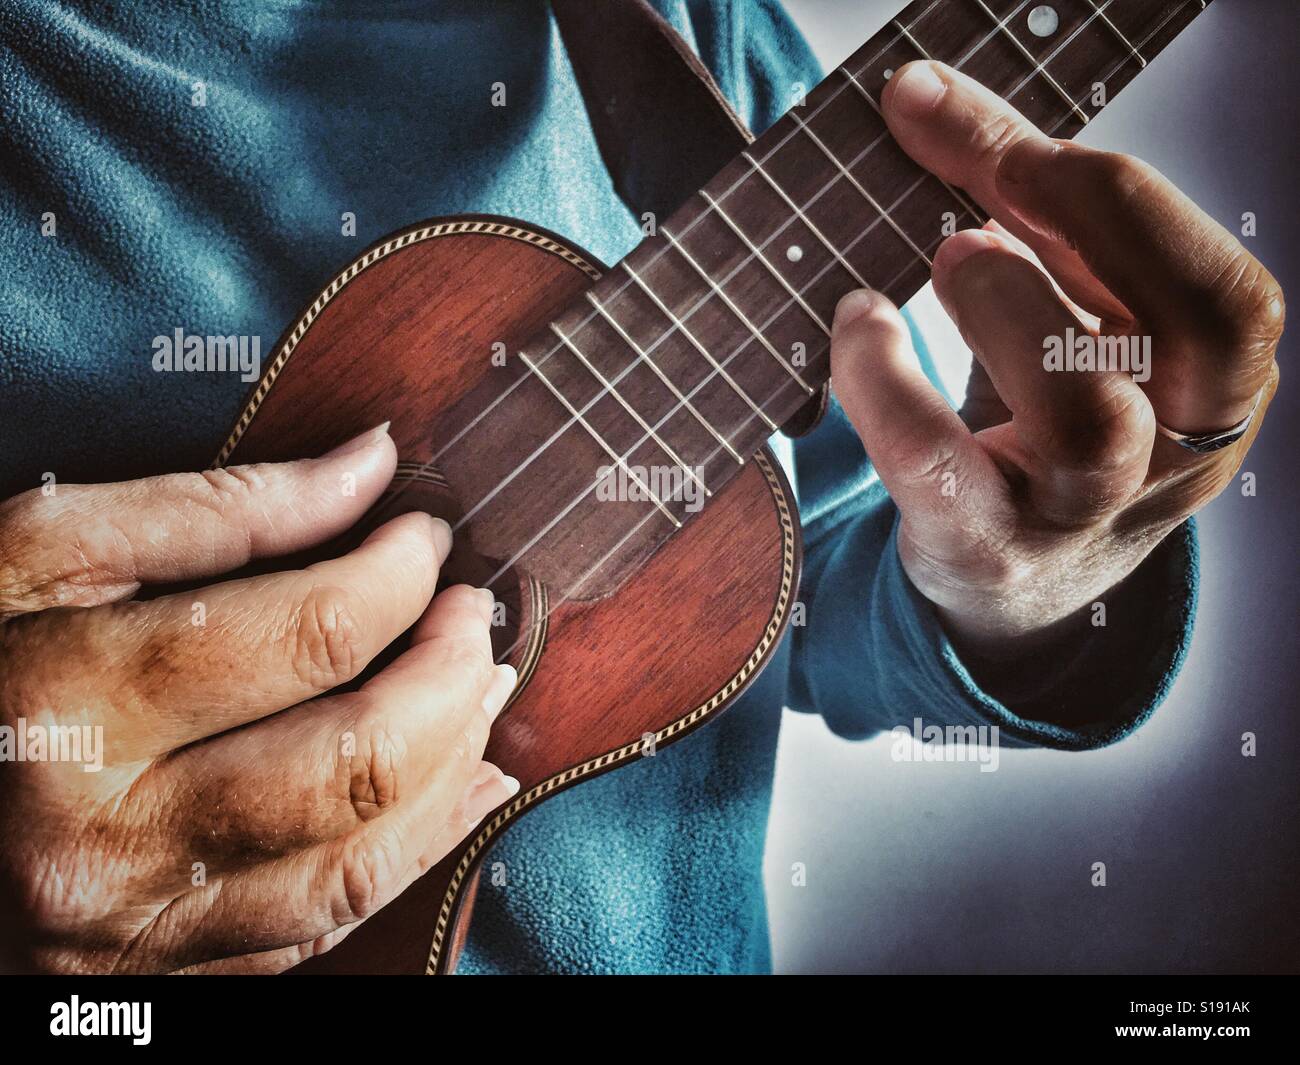 Playing a ukulele, finger style Stock Photo